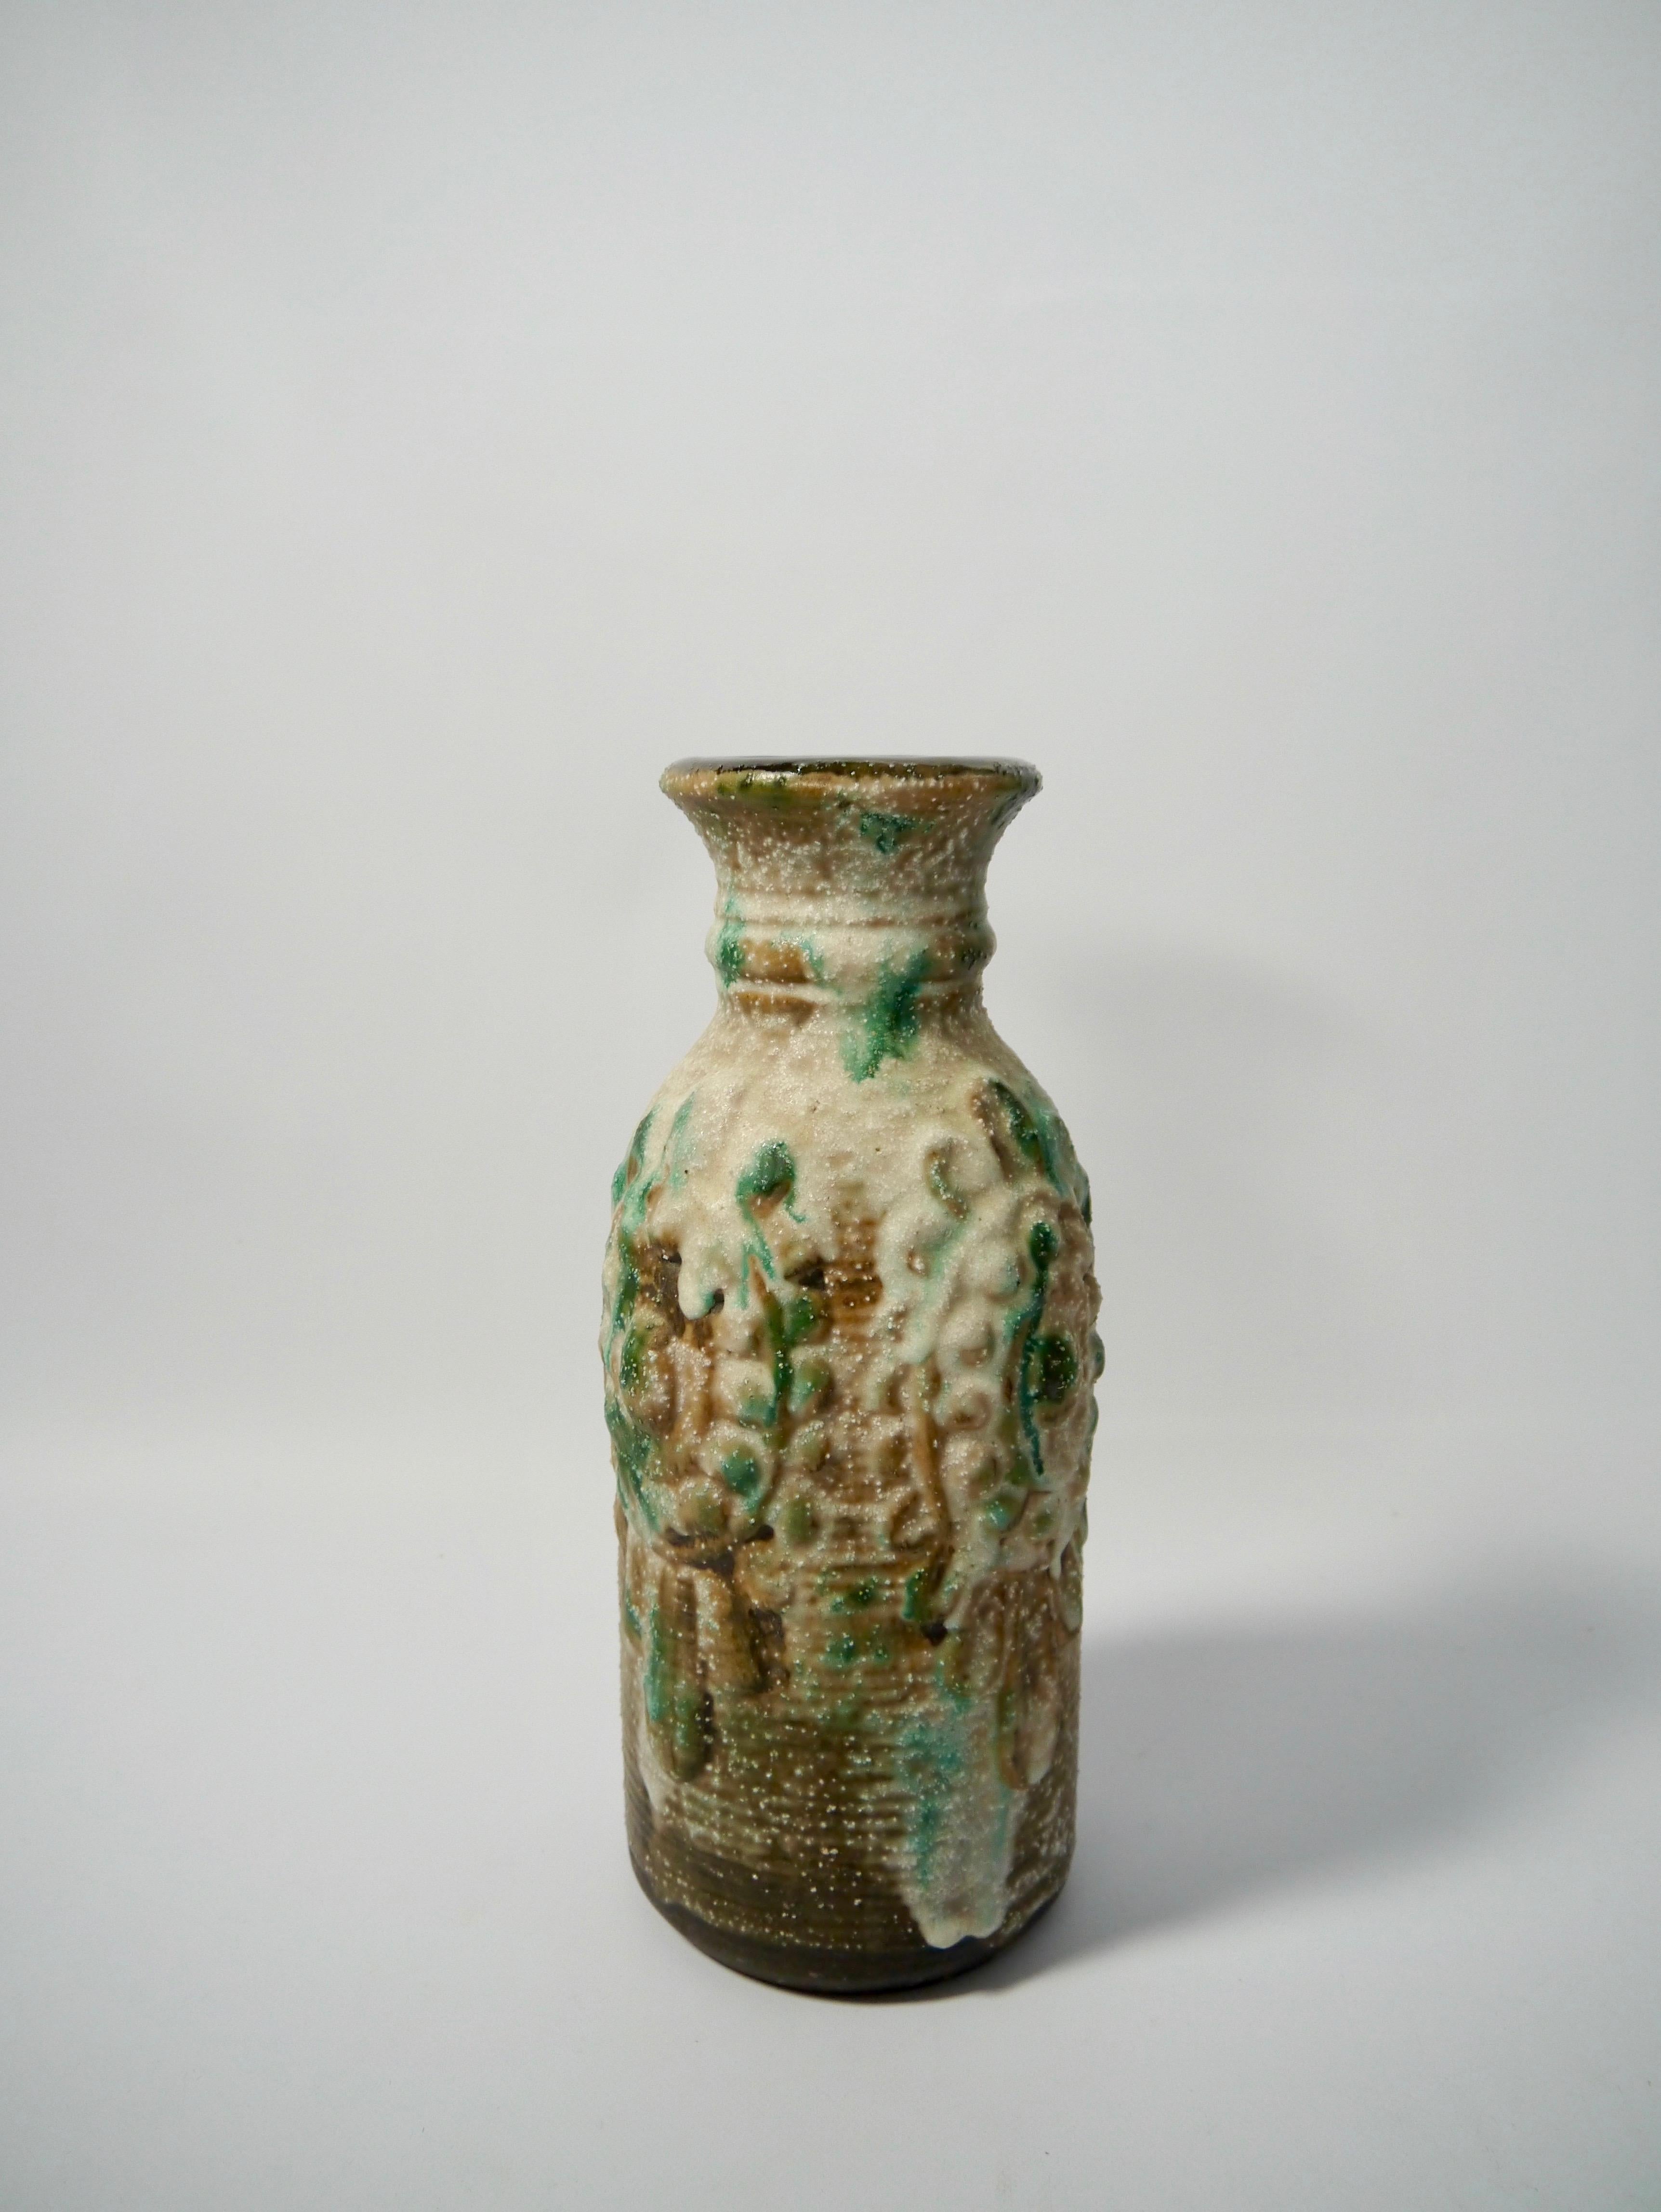 Wabi-Sabi-Stil glasierte keramische Vase aus fetter Lava, hergestellt von Carstens Tönnieshof, Westdeutschland 1960er Jahre. Sanfte Grüntöne, gemischt mit cremeweißem und gebranntem Ton, sowie ein von der Antike inspiriertes Relief und die Form